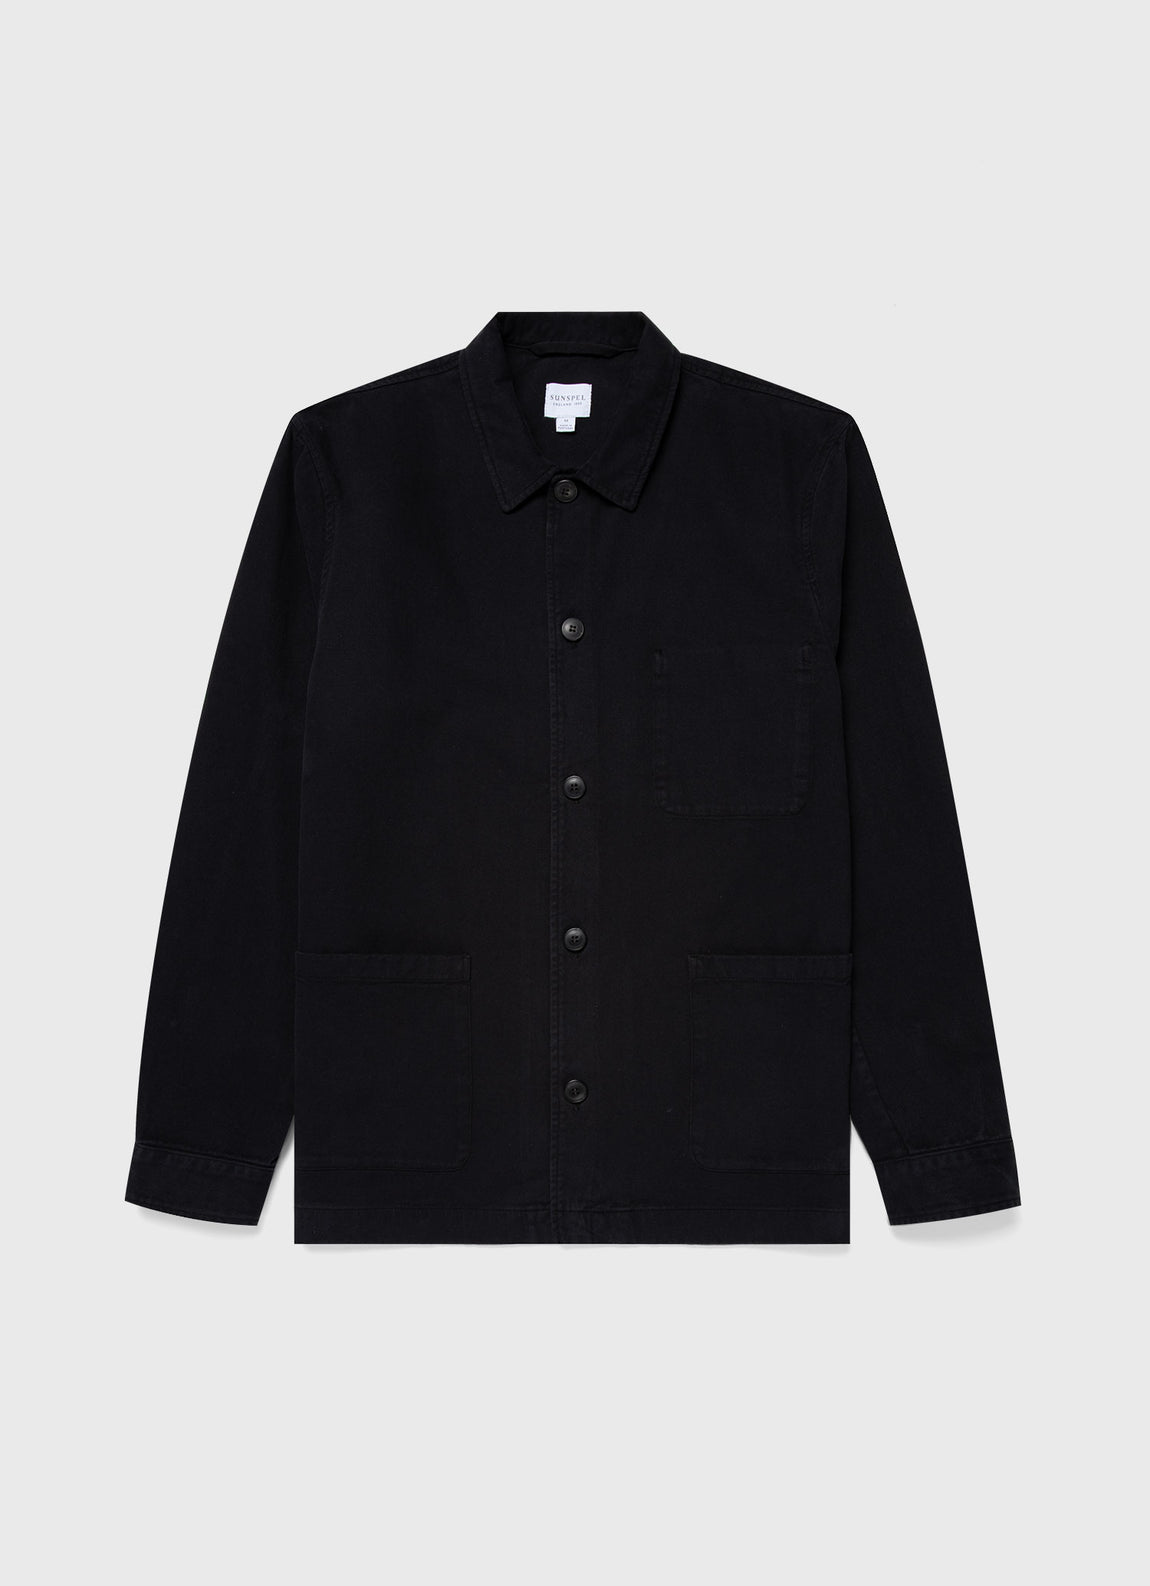 Men's Brushed Cotton Twin Pocket Jacket in Black | Sunspel